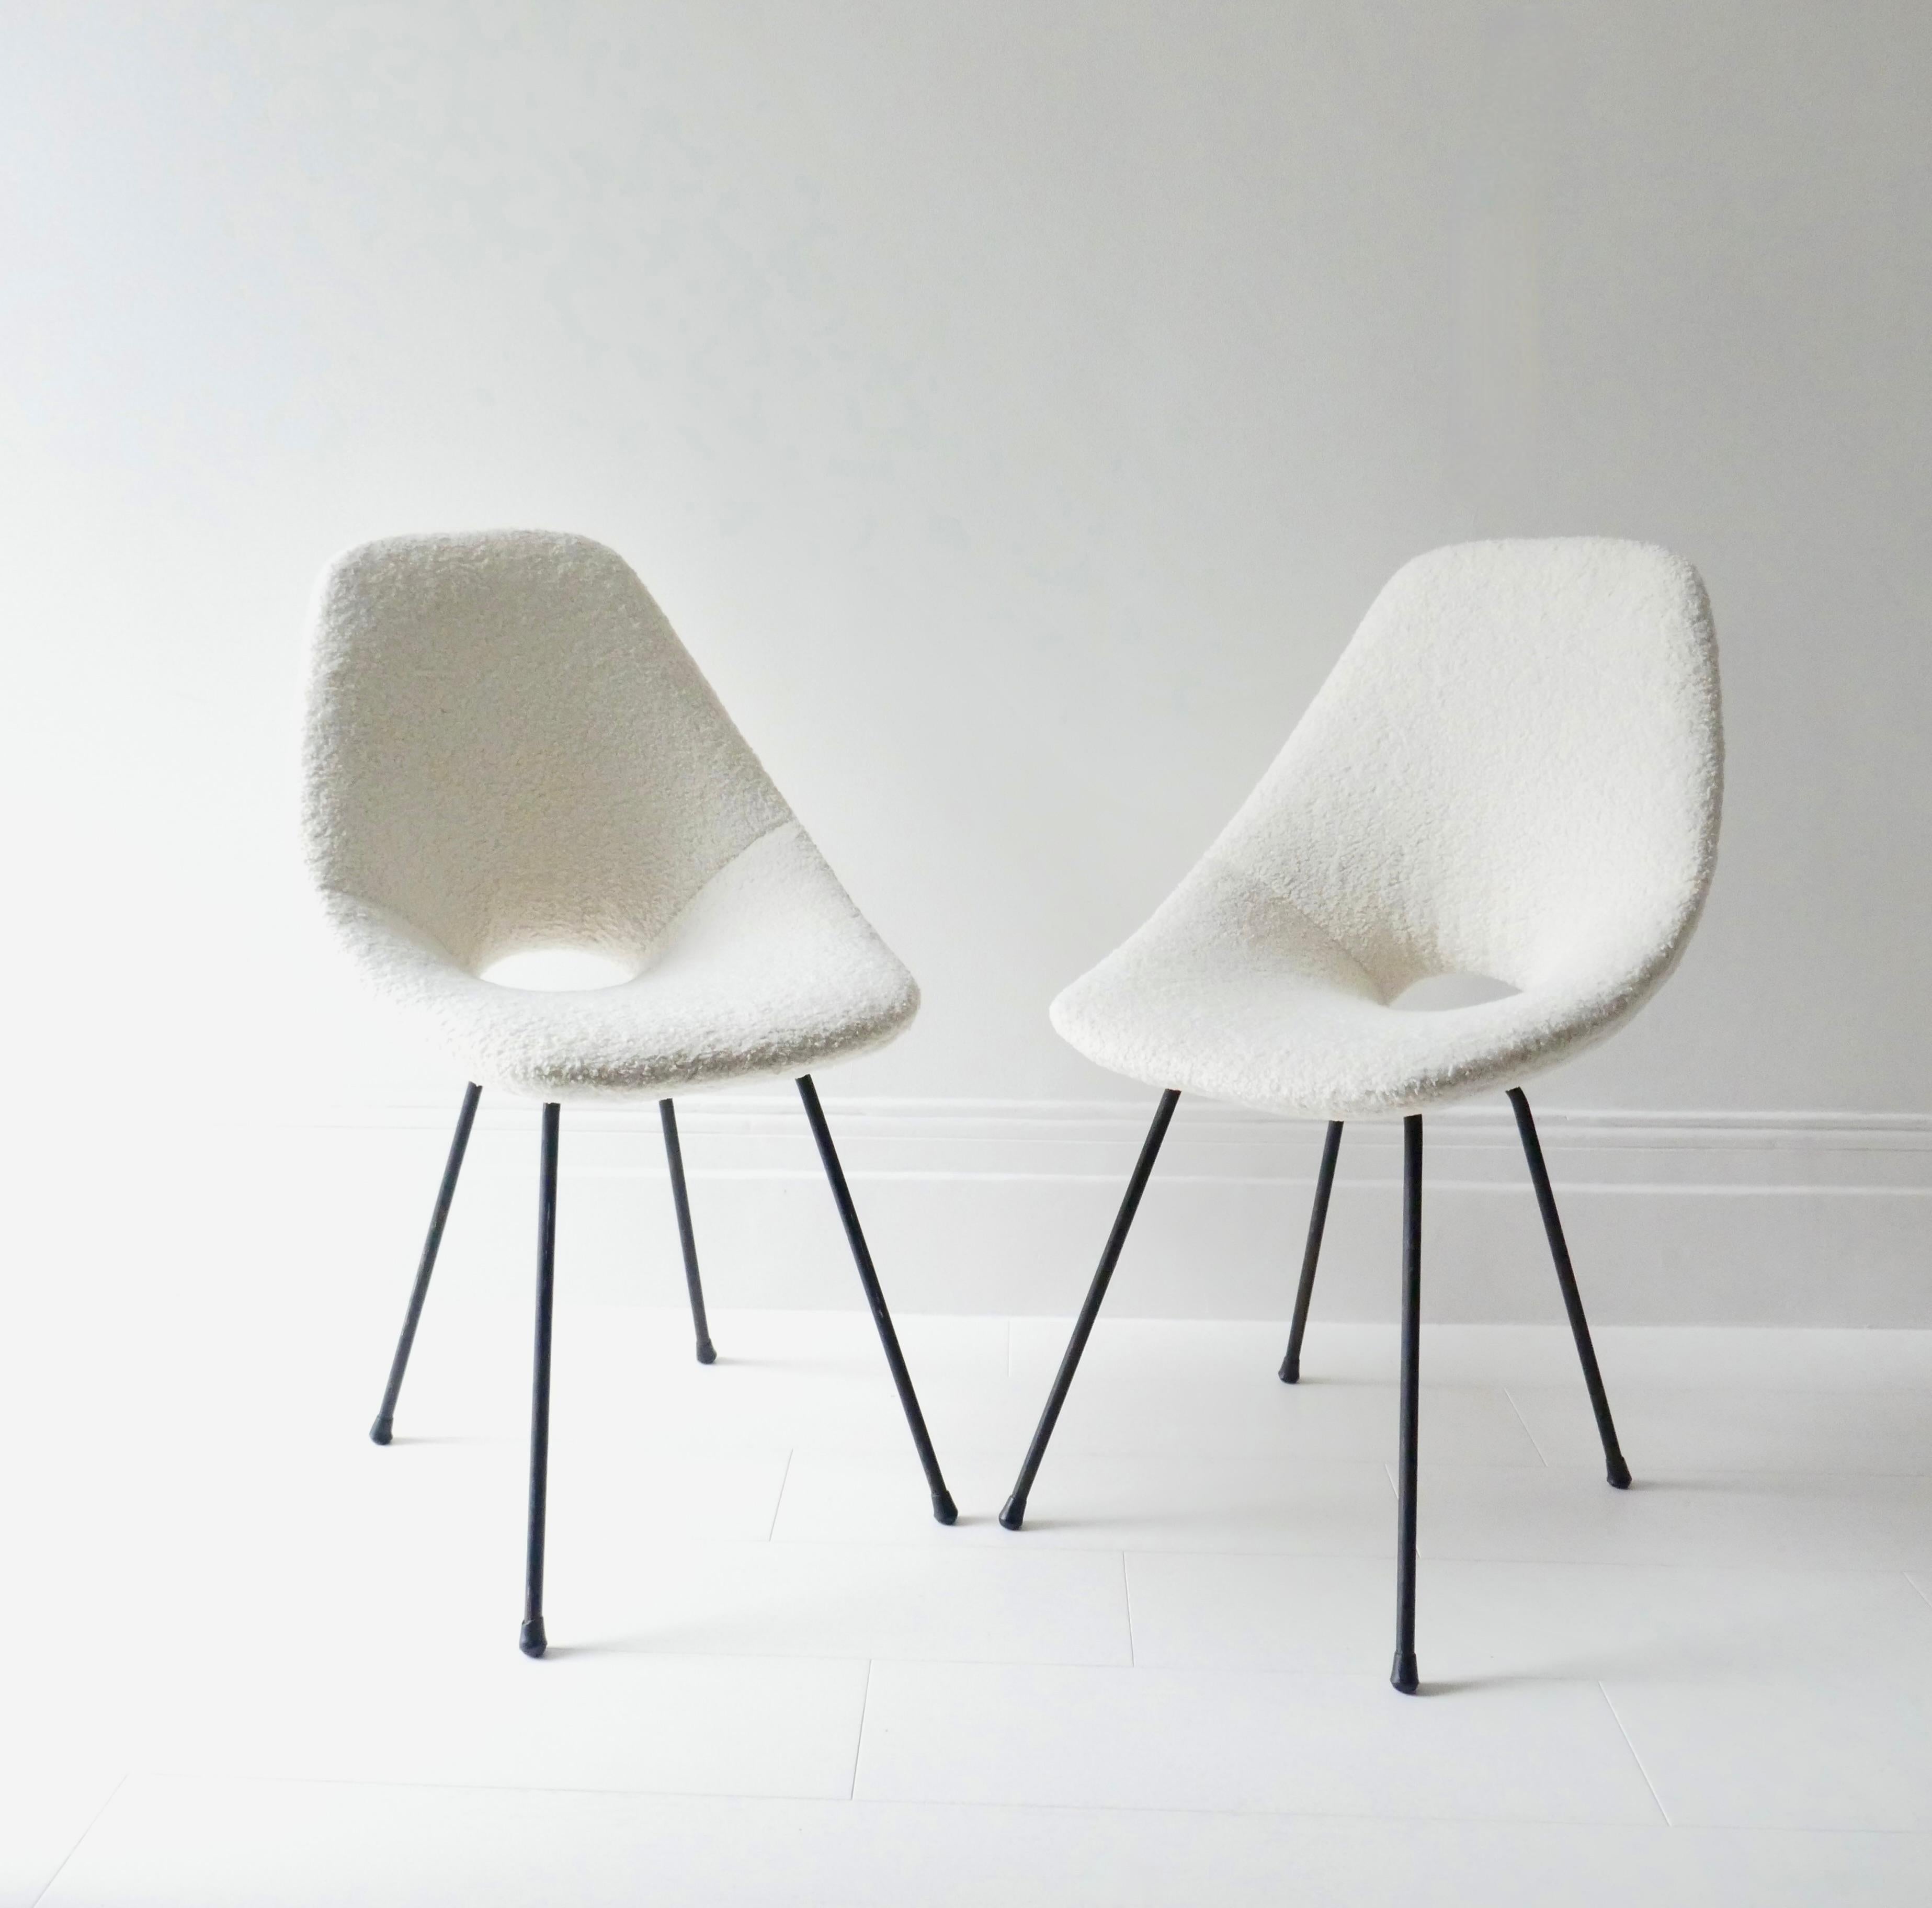 Zwei ikonische Medea-Stühle, 1955 von Vittorio Nobili für Fratelli Tagliabue entworfen, Meda 1950 und Gewinner des Compasso D'Oro auf der Biennale für Industriedesign in Mailand im folgenden Jahr (1956). 
Die Stühle sind neu gepolstert in einem